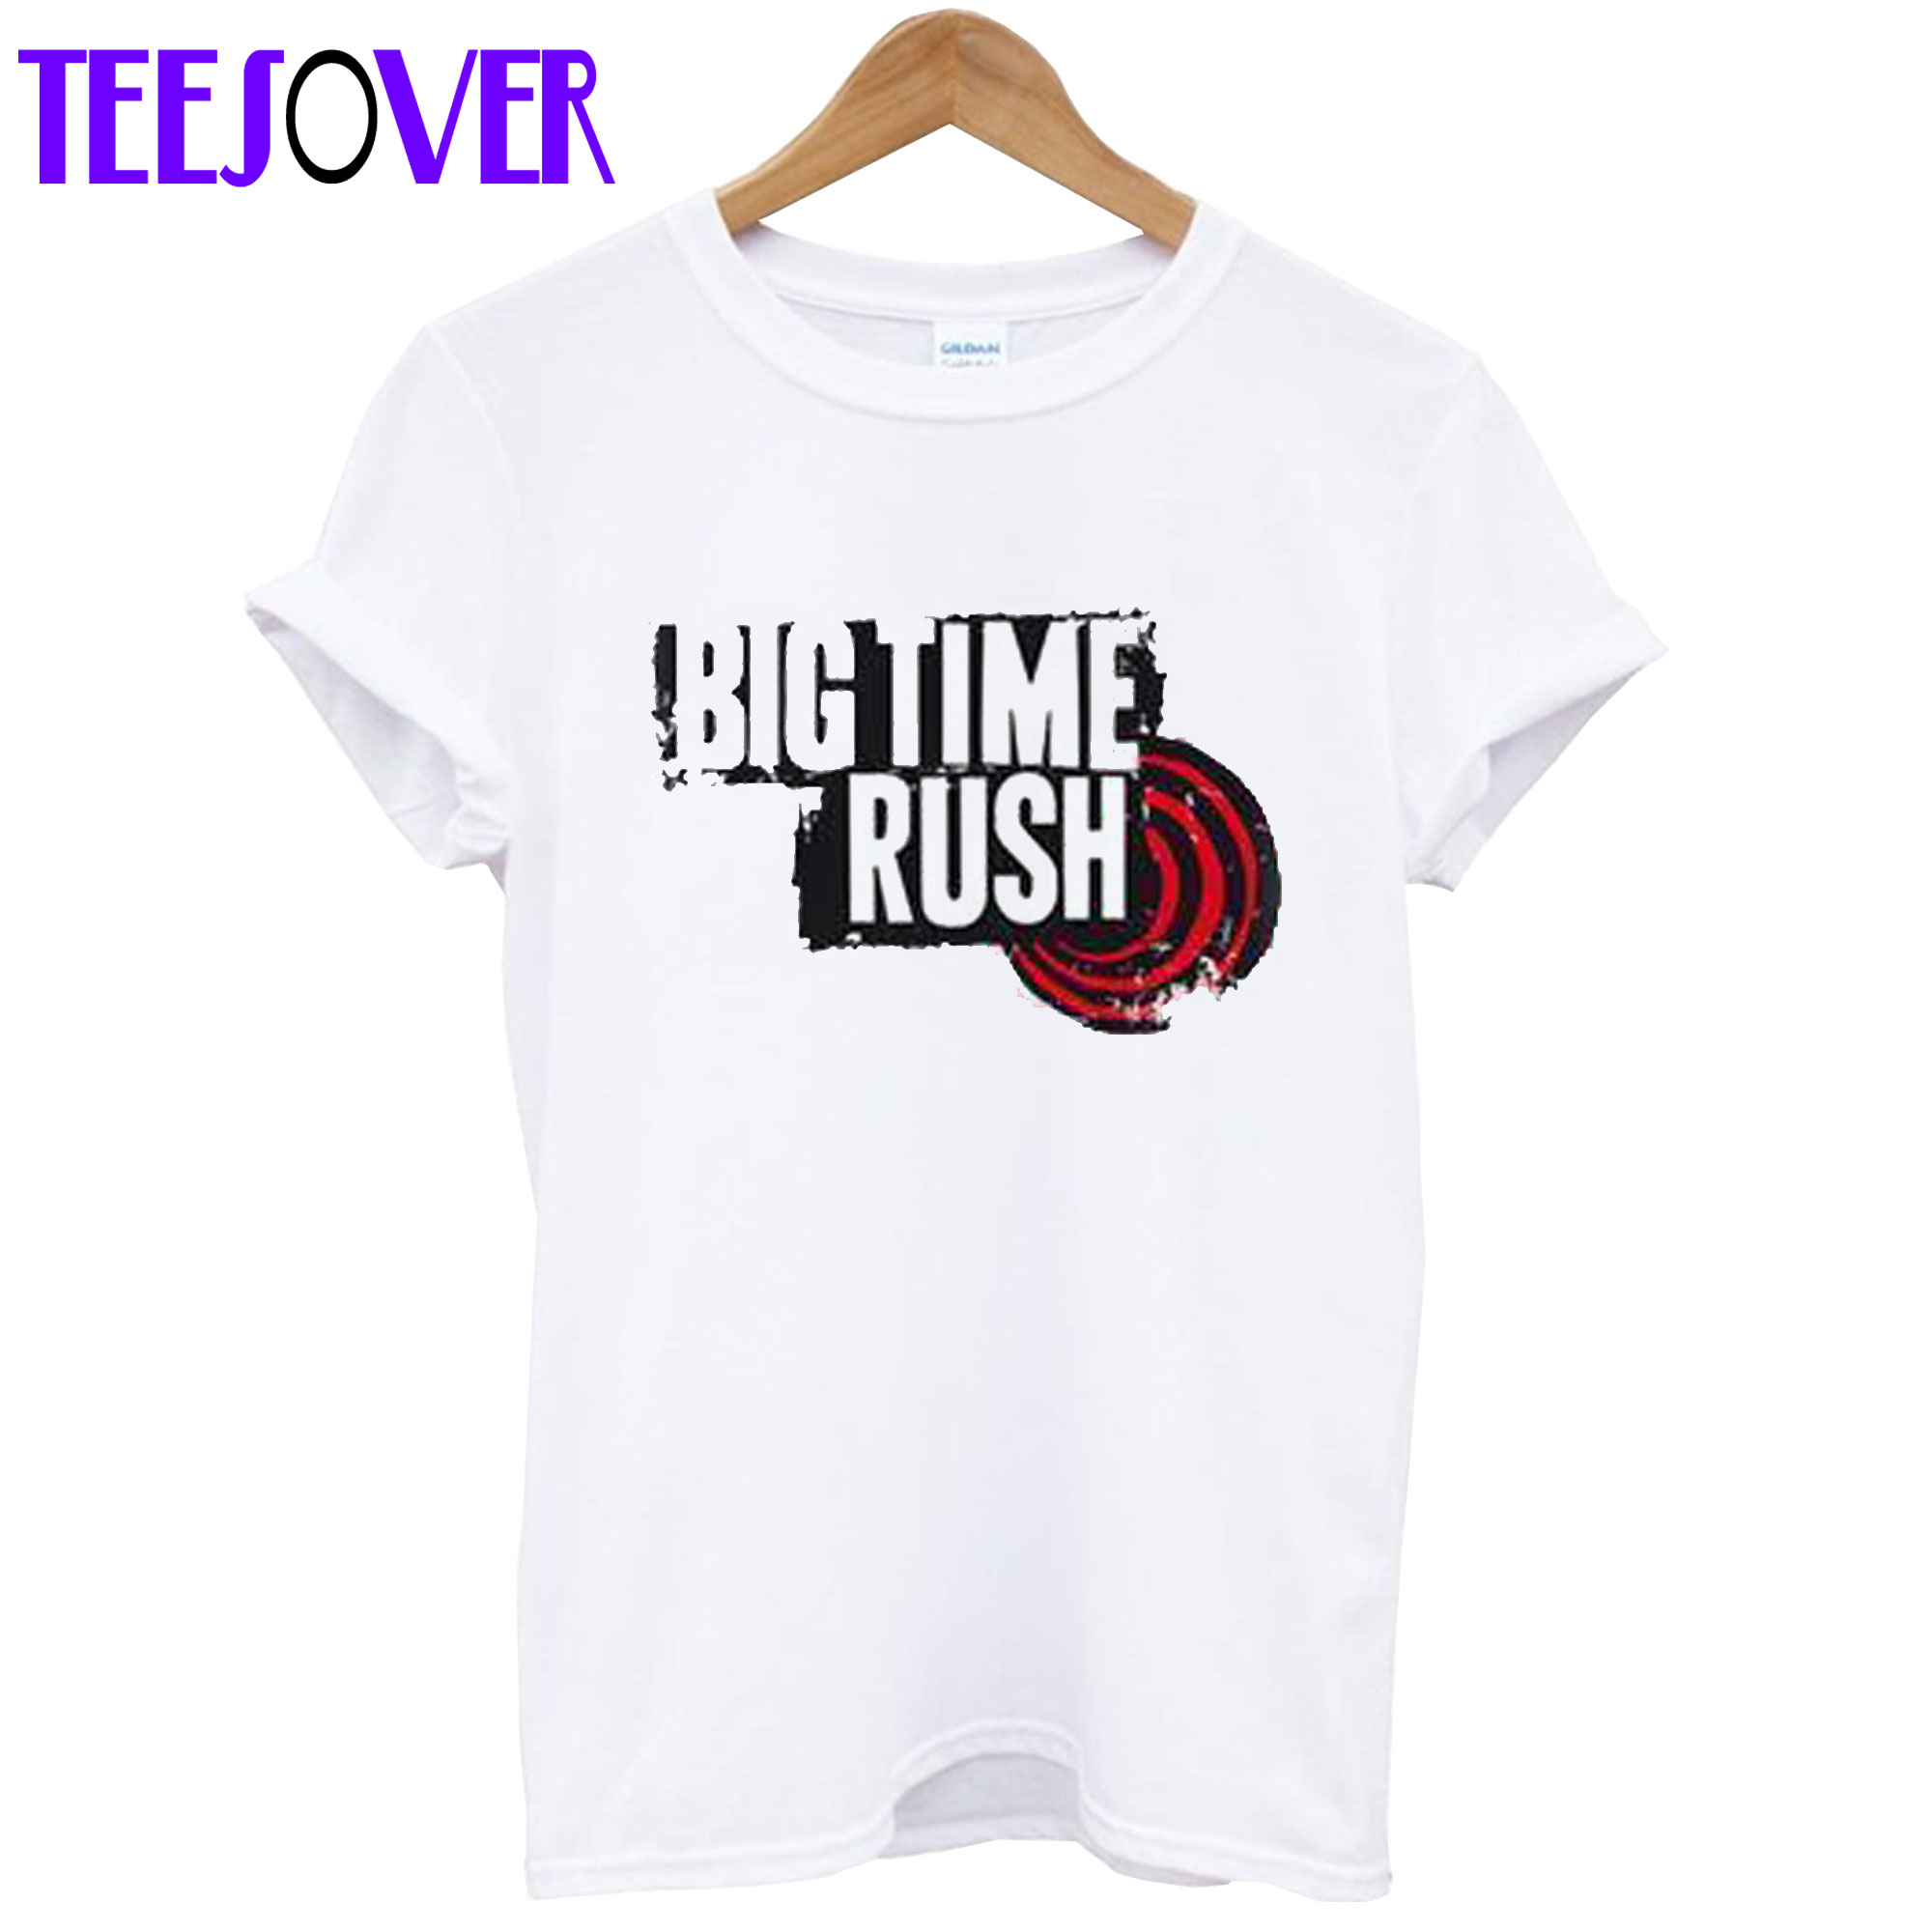 Big Time Rush T-Shirt